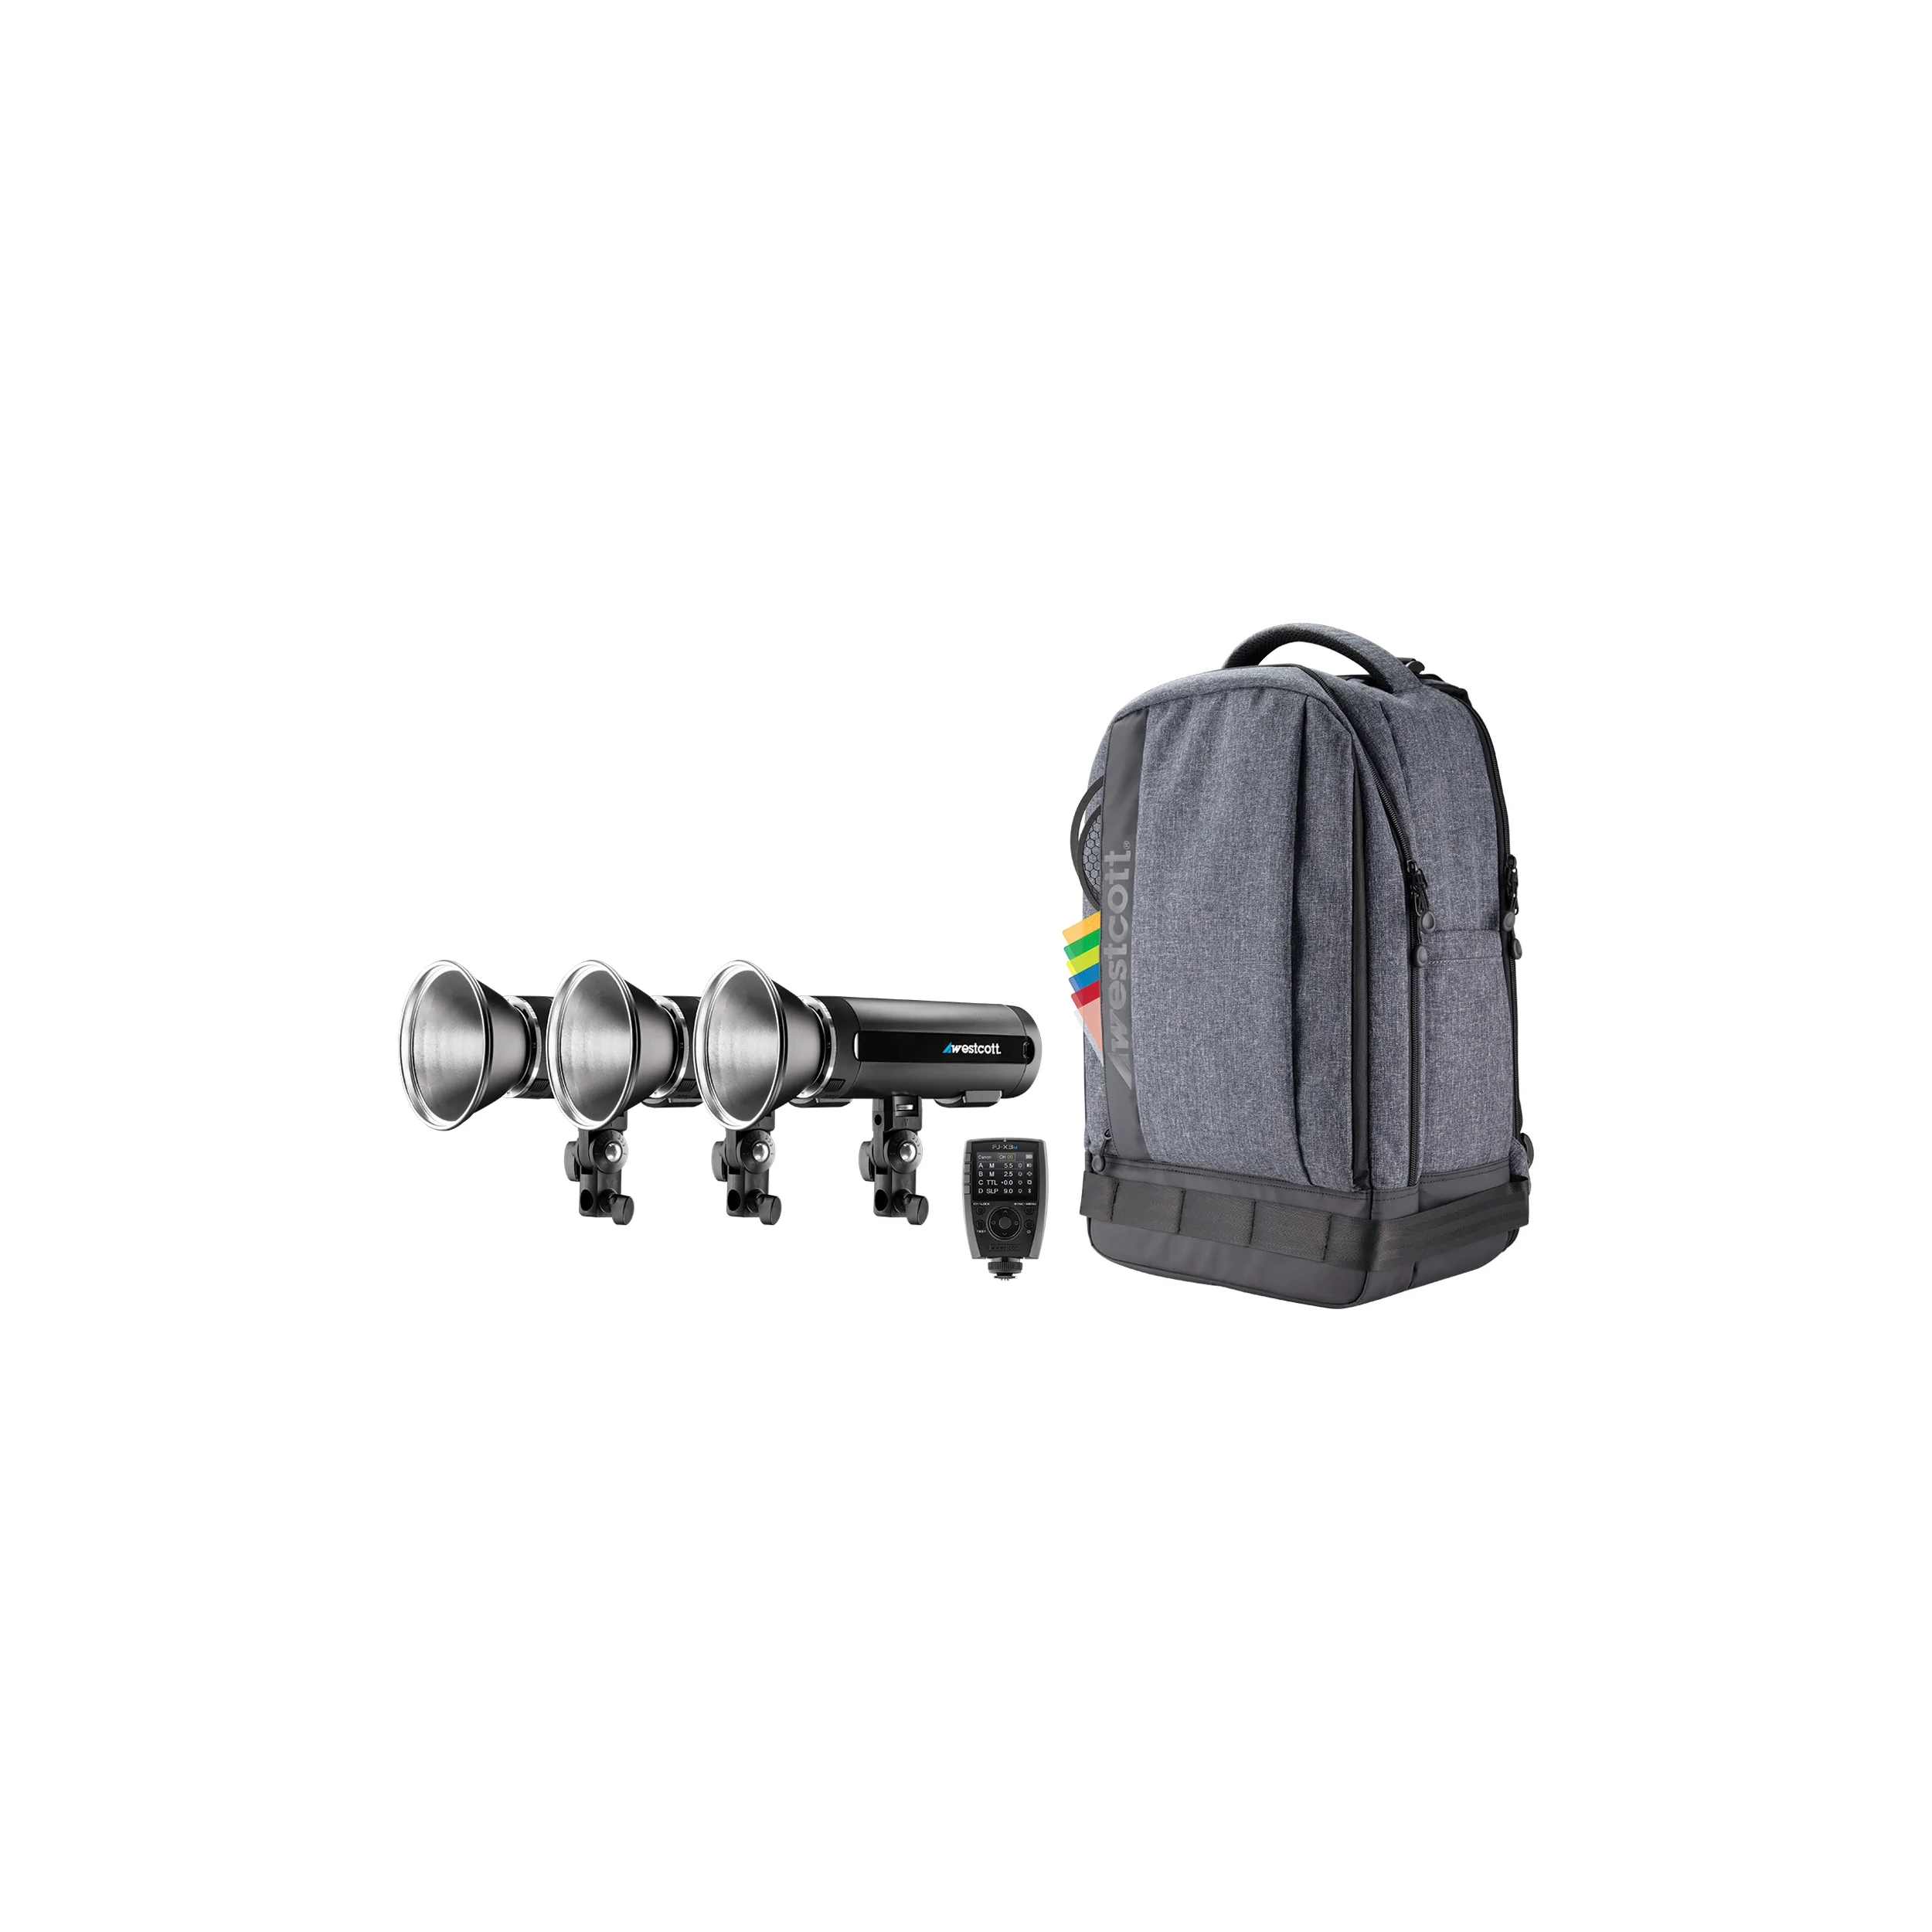 Kit de sac à dos stroboscope Westcott FJ200 stroboscopique avec déclencheur sans fil FJ-X3S pour les caméras Sony